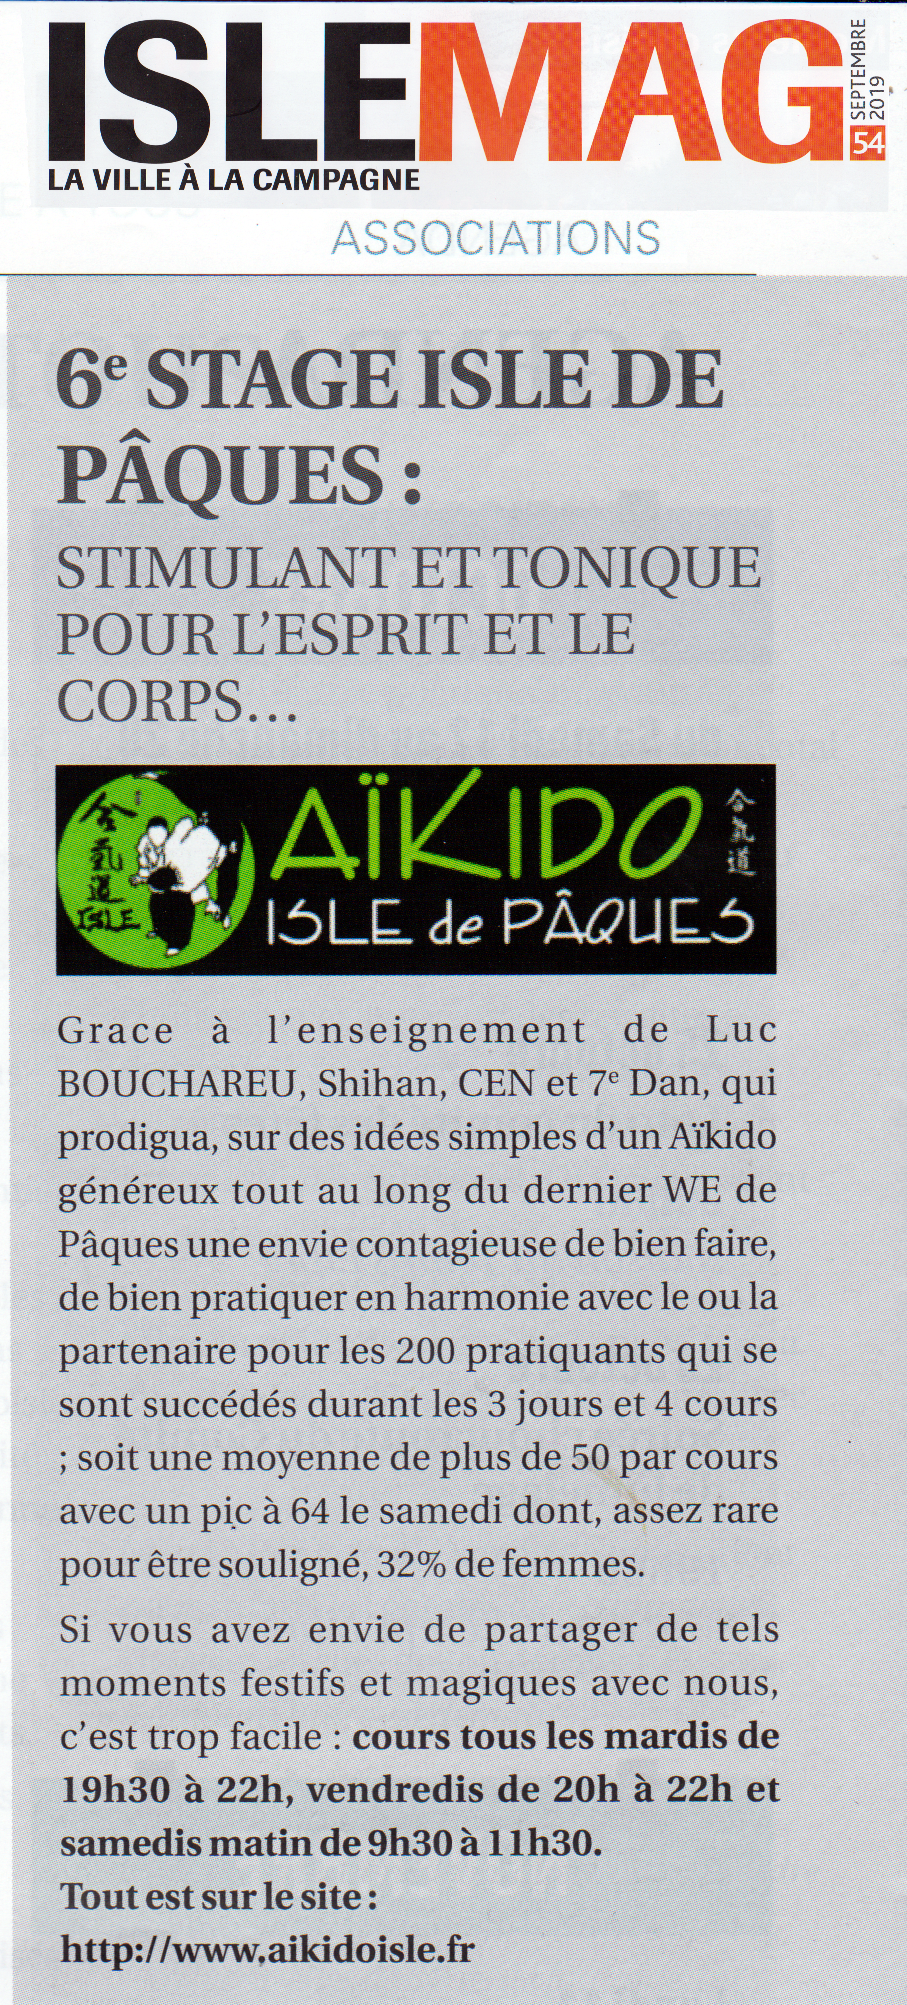 190913 Article Isle de Pâques 2019 dans Isle Mag.png - 4,81 MB